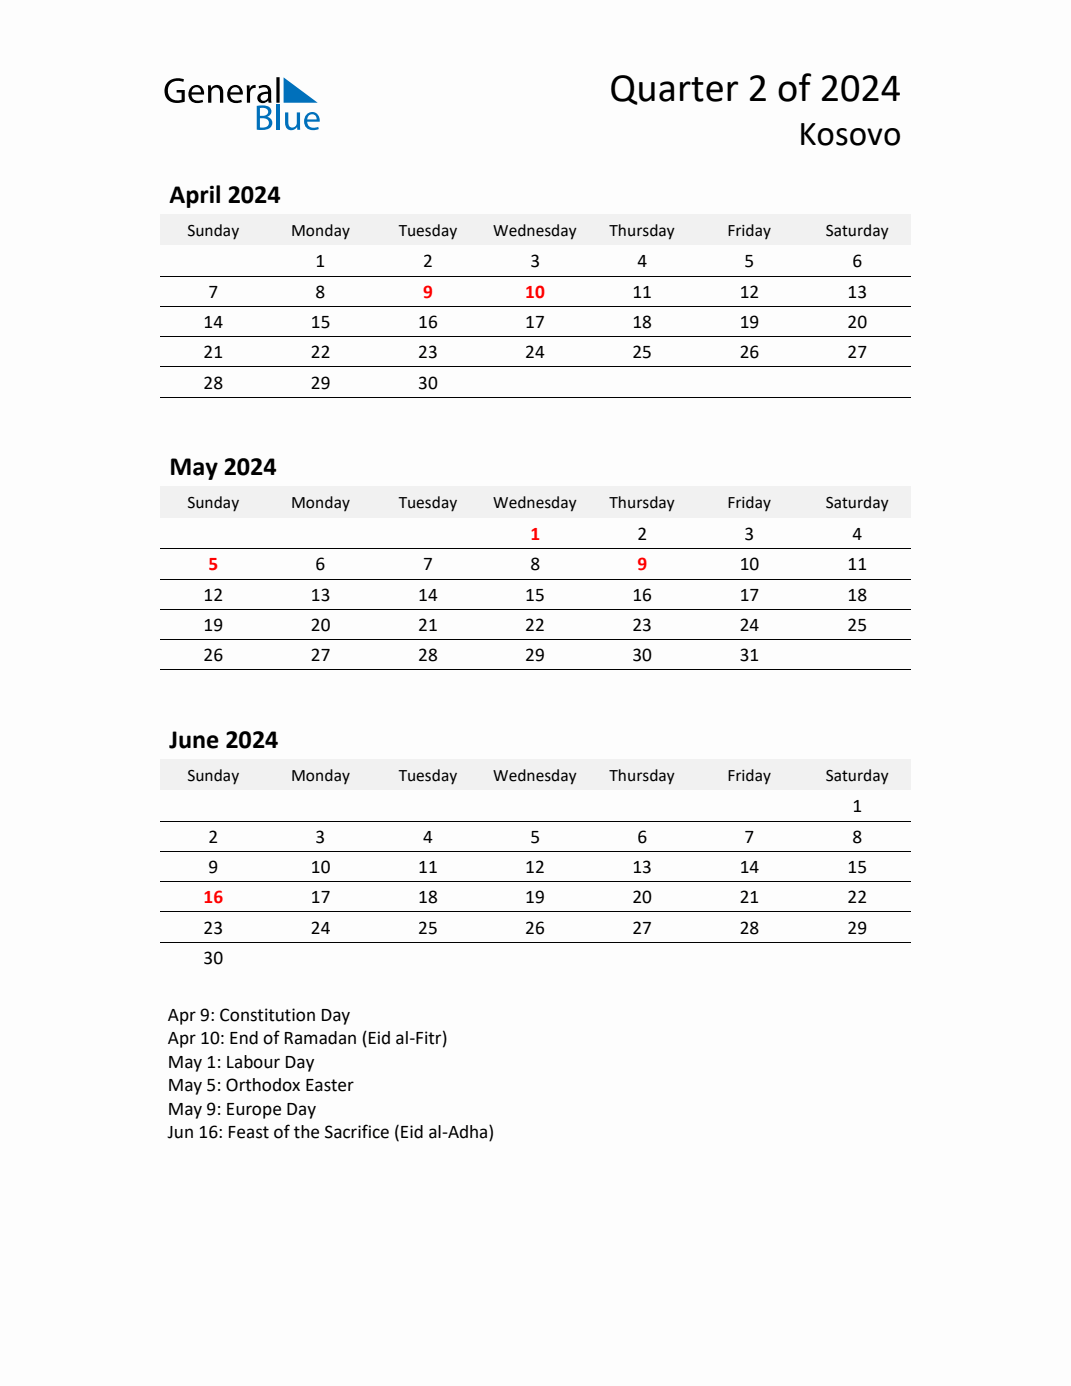 Q2 2024 Quarterly Calendar with Kosovo Holidays